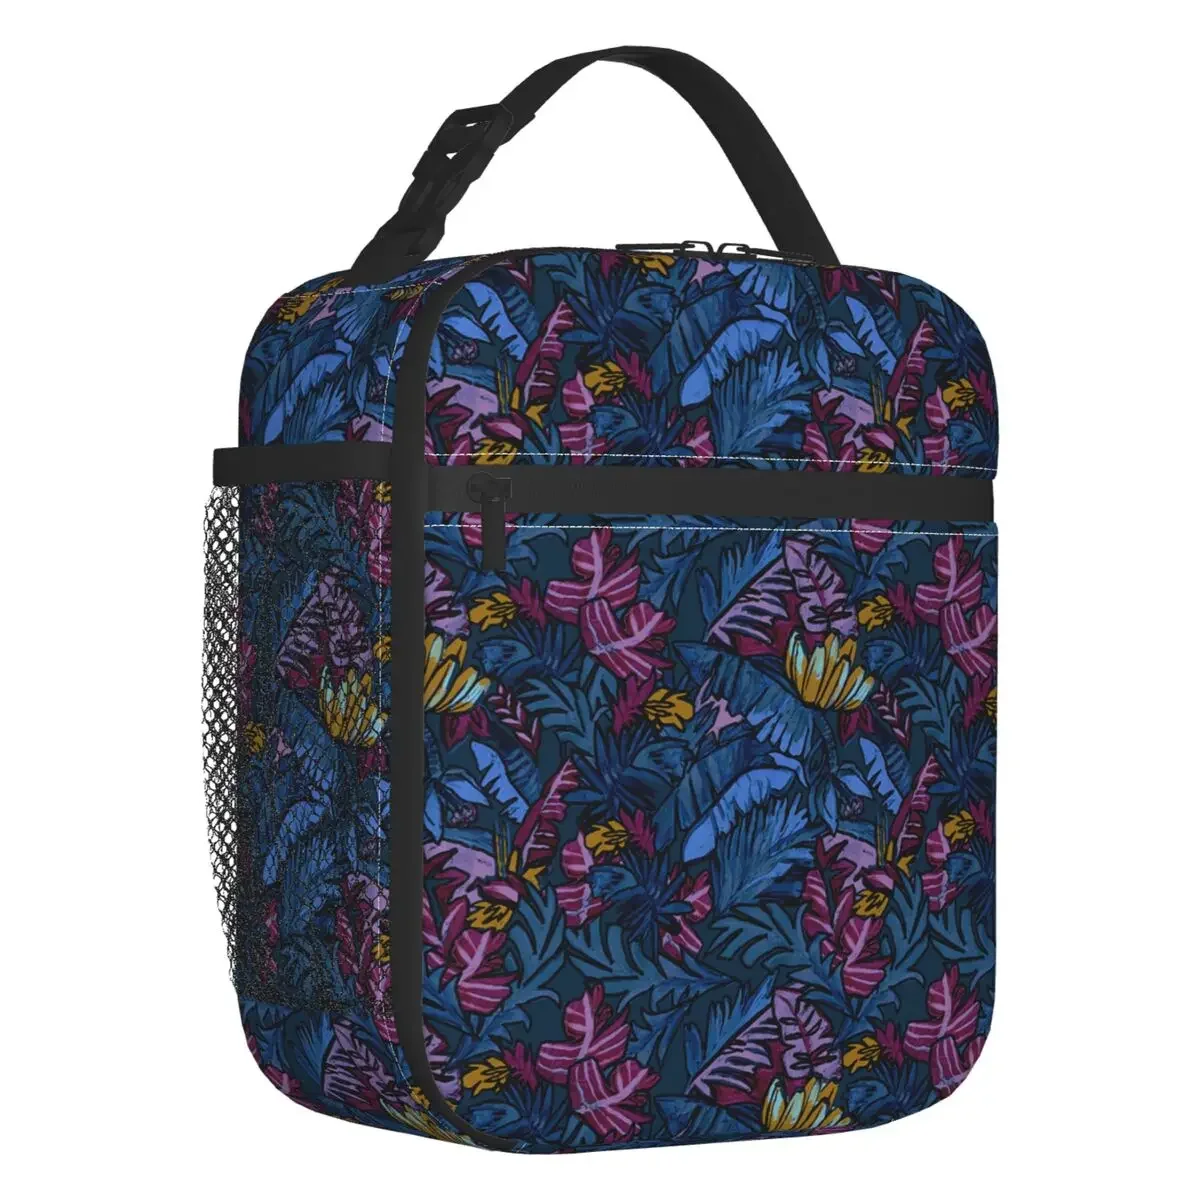 

Изолированная сумка для ланча с синими банановыми листьями для женщин, герметичная Термосумка-холодильник для ланча, сумка для офиса, работы, школы